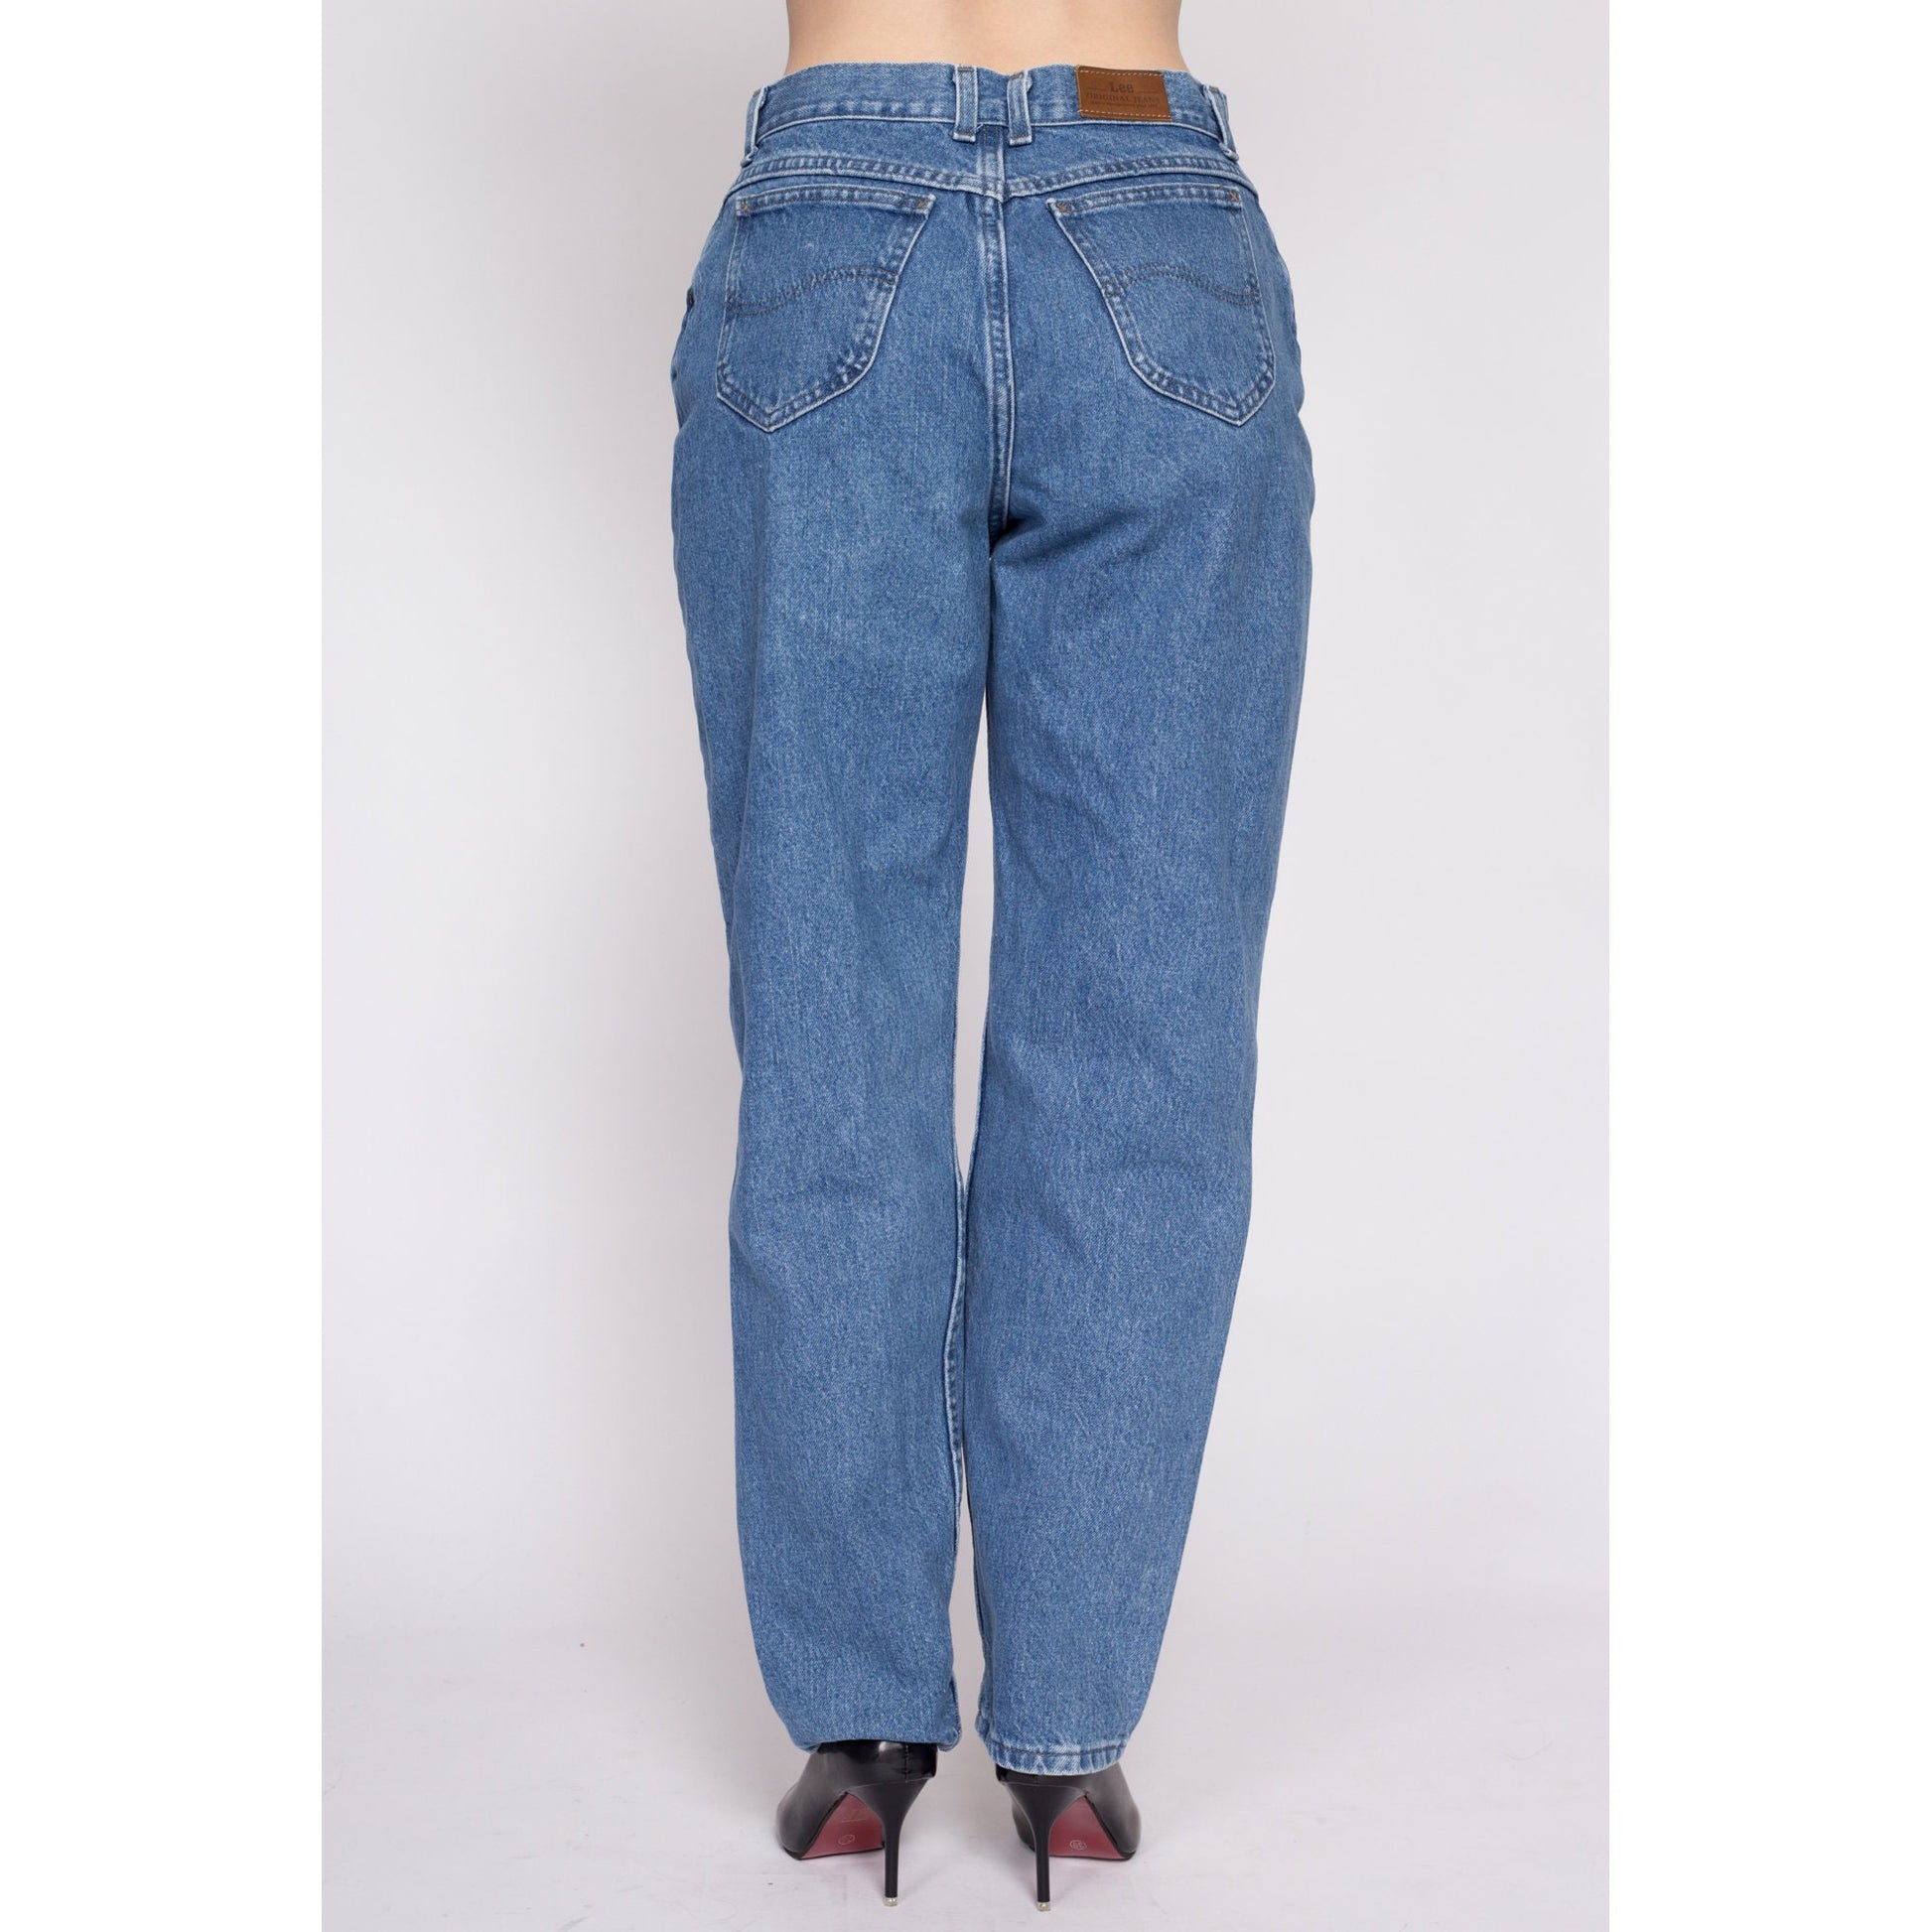 Følelse foragte Hævde 90s Lee High Waisted Mom Jeans - Medium to Large, 30.5" – Flying Apple  Vintage